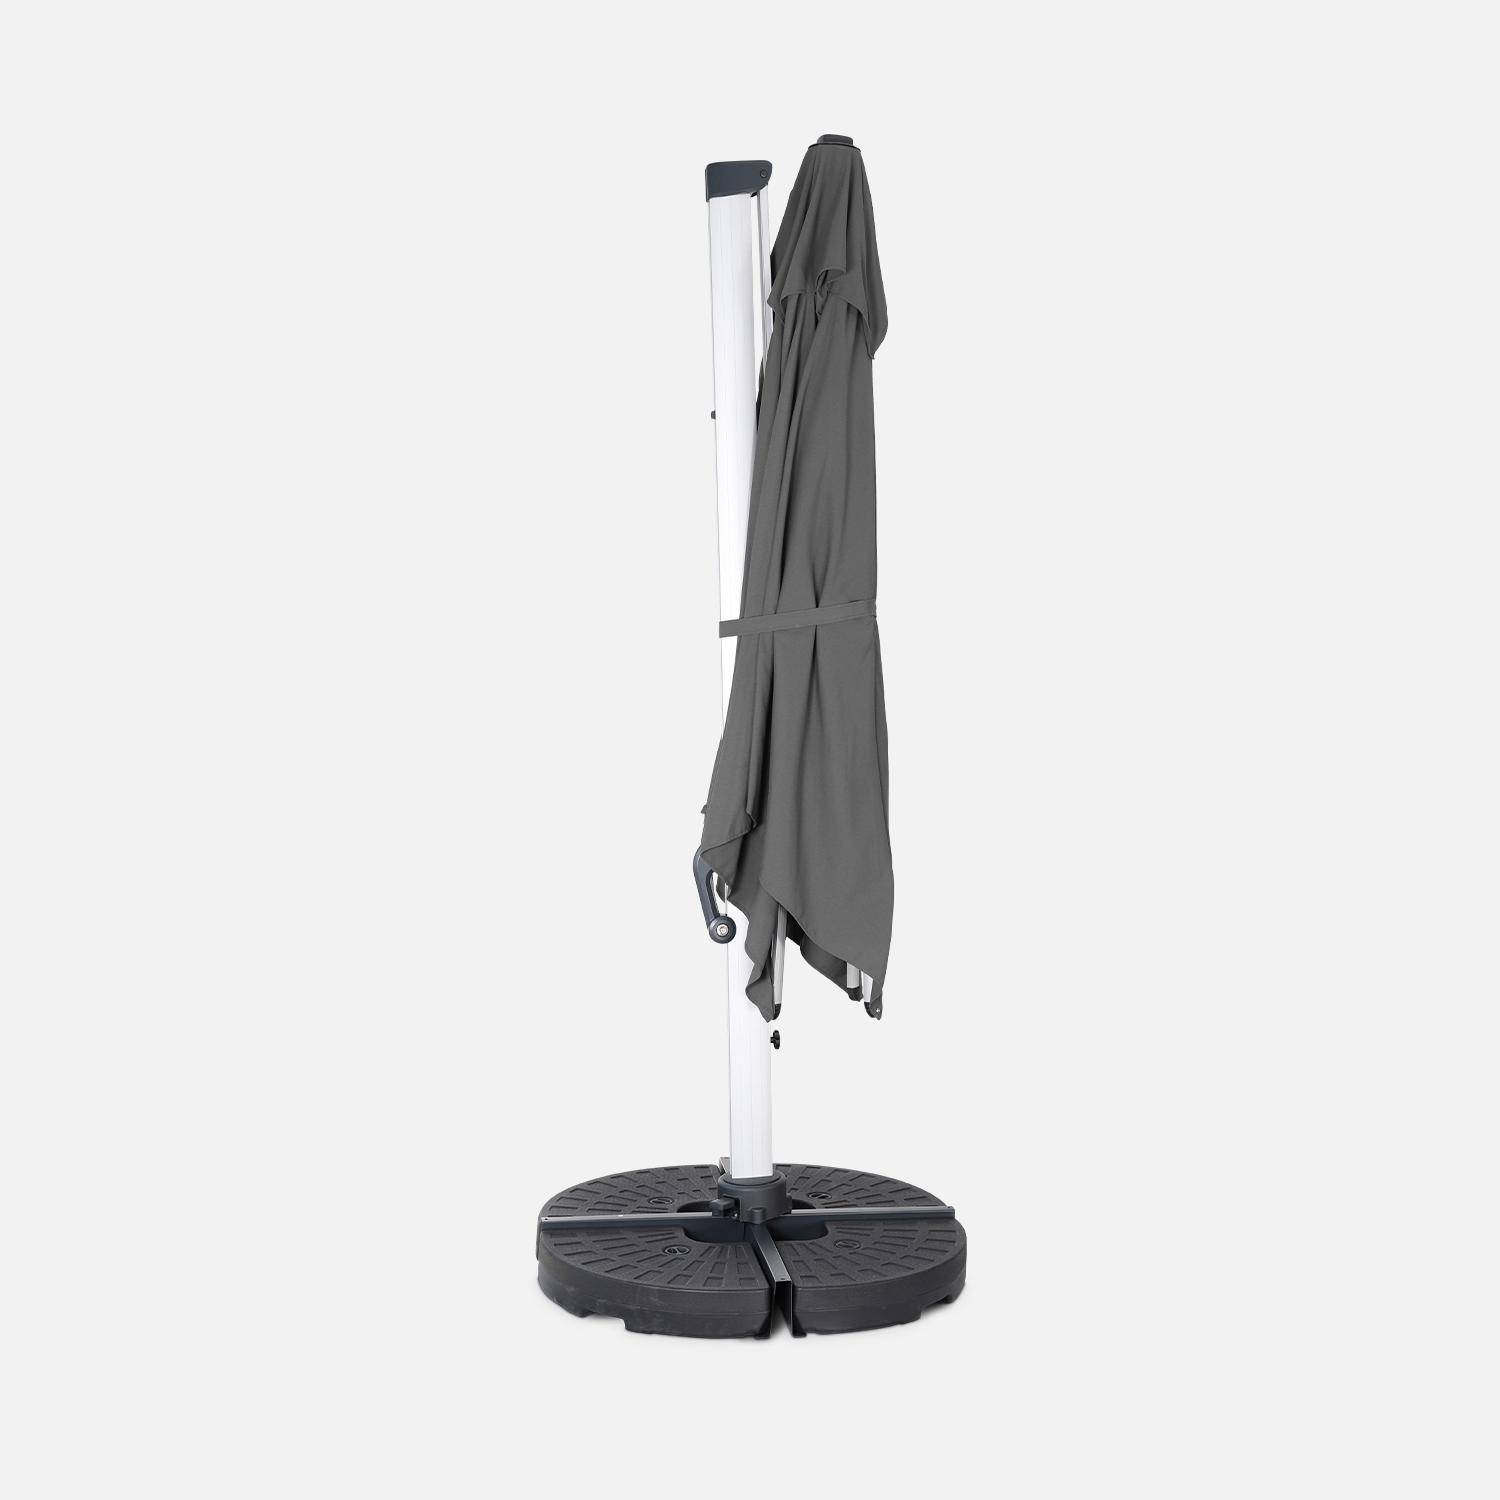 Topkwaliteit parasol, 3x3m, grijs polyester doek, geanodiseerd aluminium frame, hoes inbegrepen,sweeek,Photo4